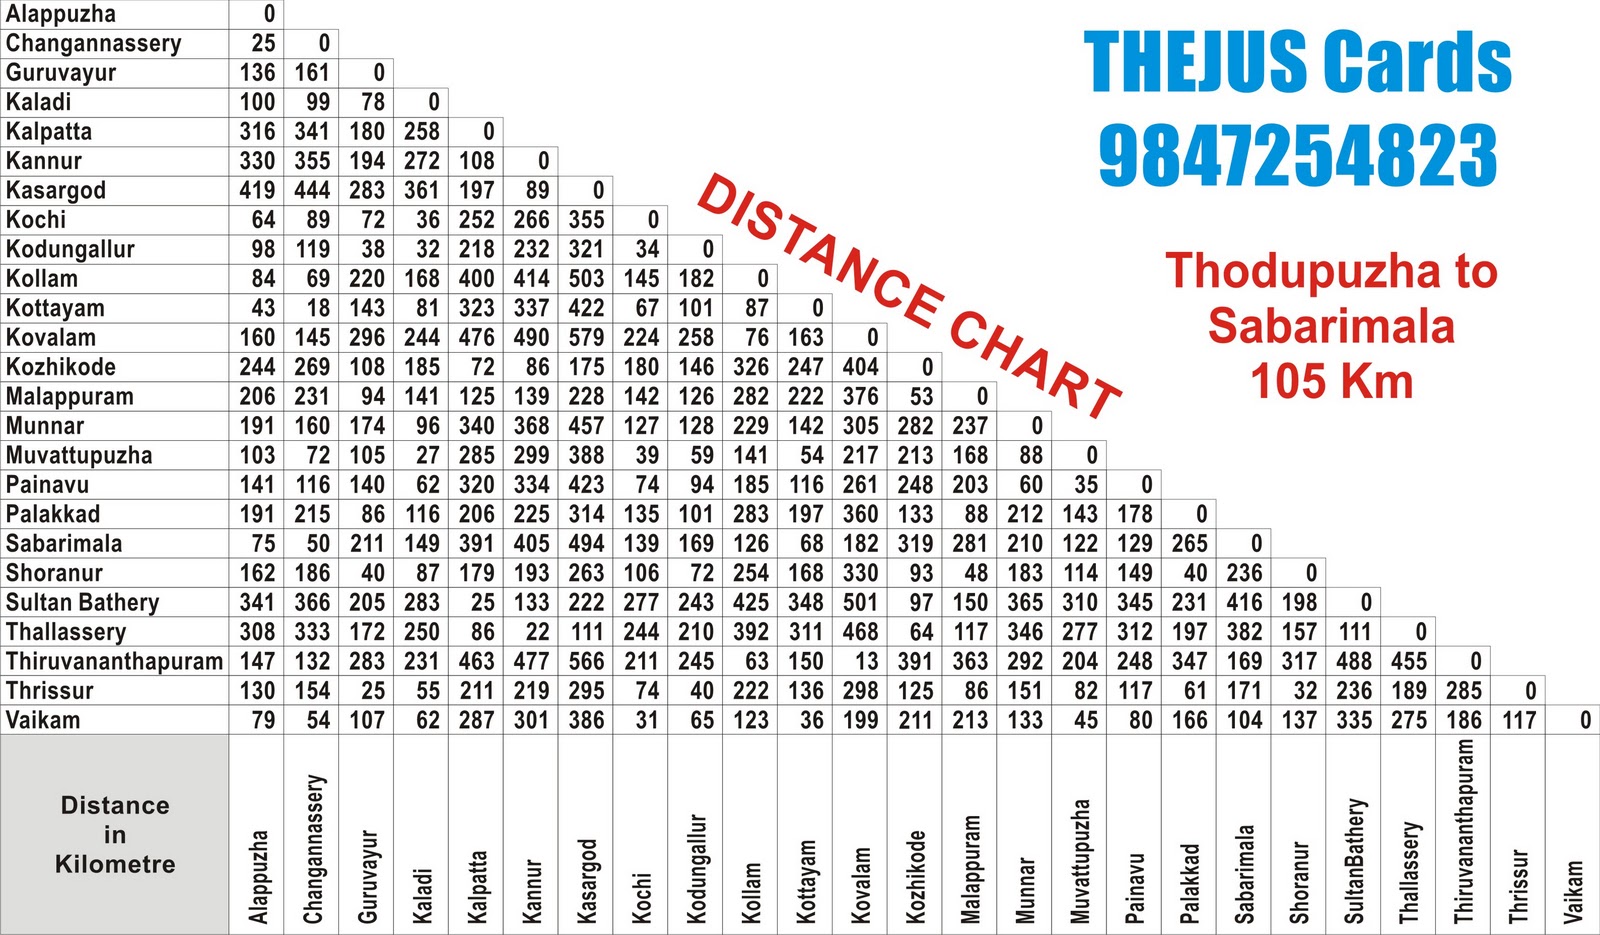 THEJUScards: sabarimala distance chart